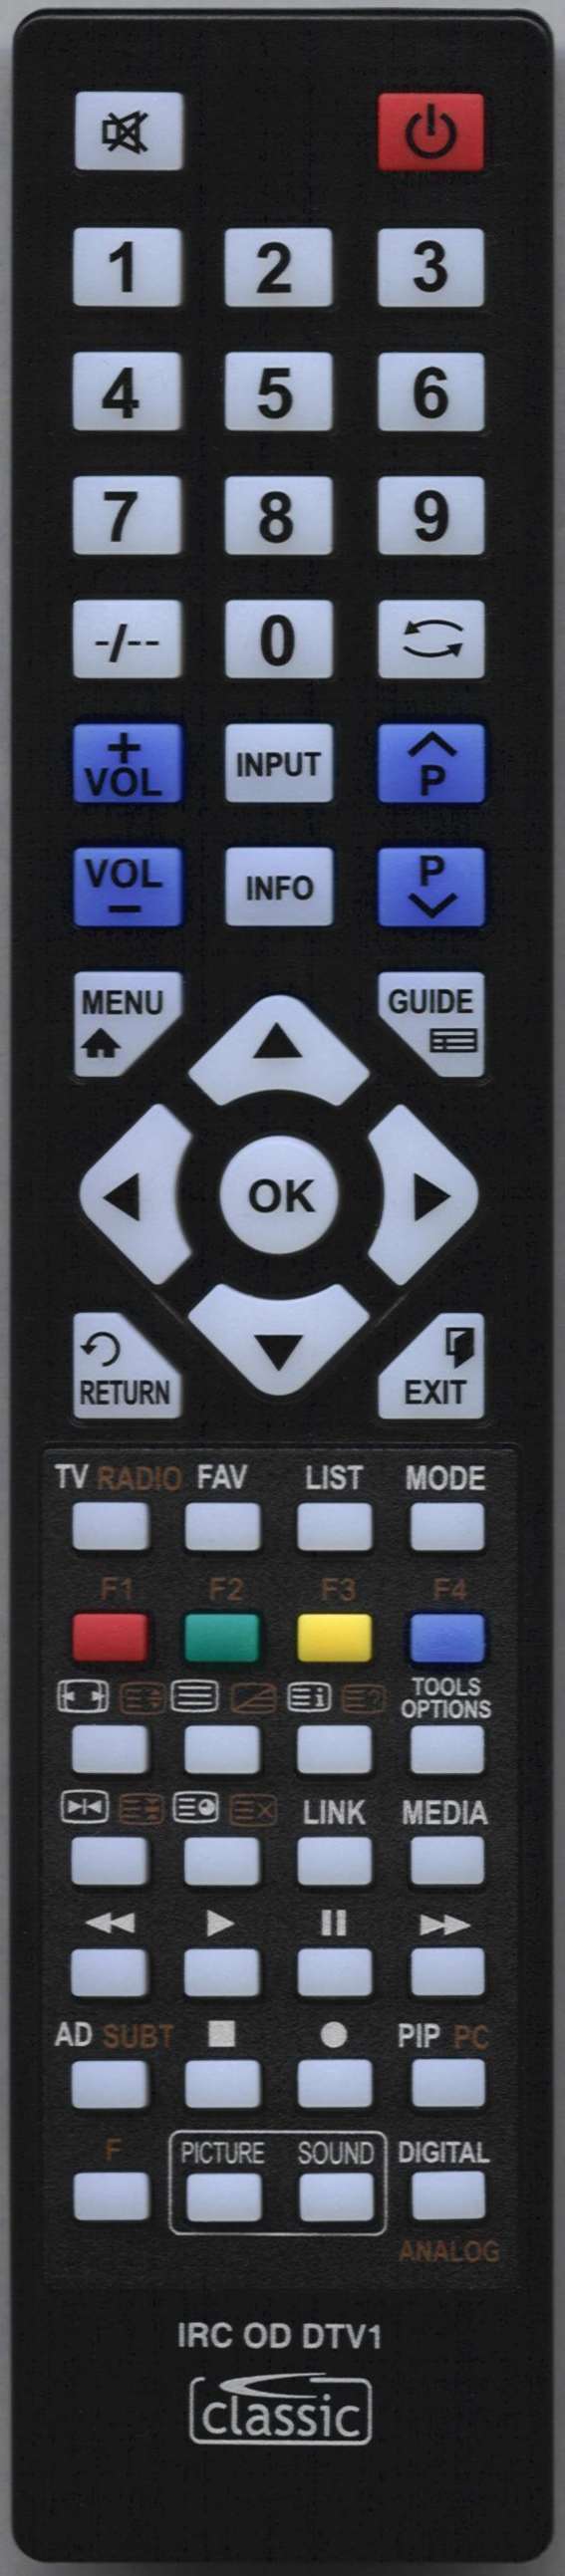 LG AKB75675325 Remote Control Alternative